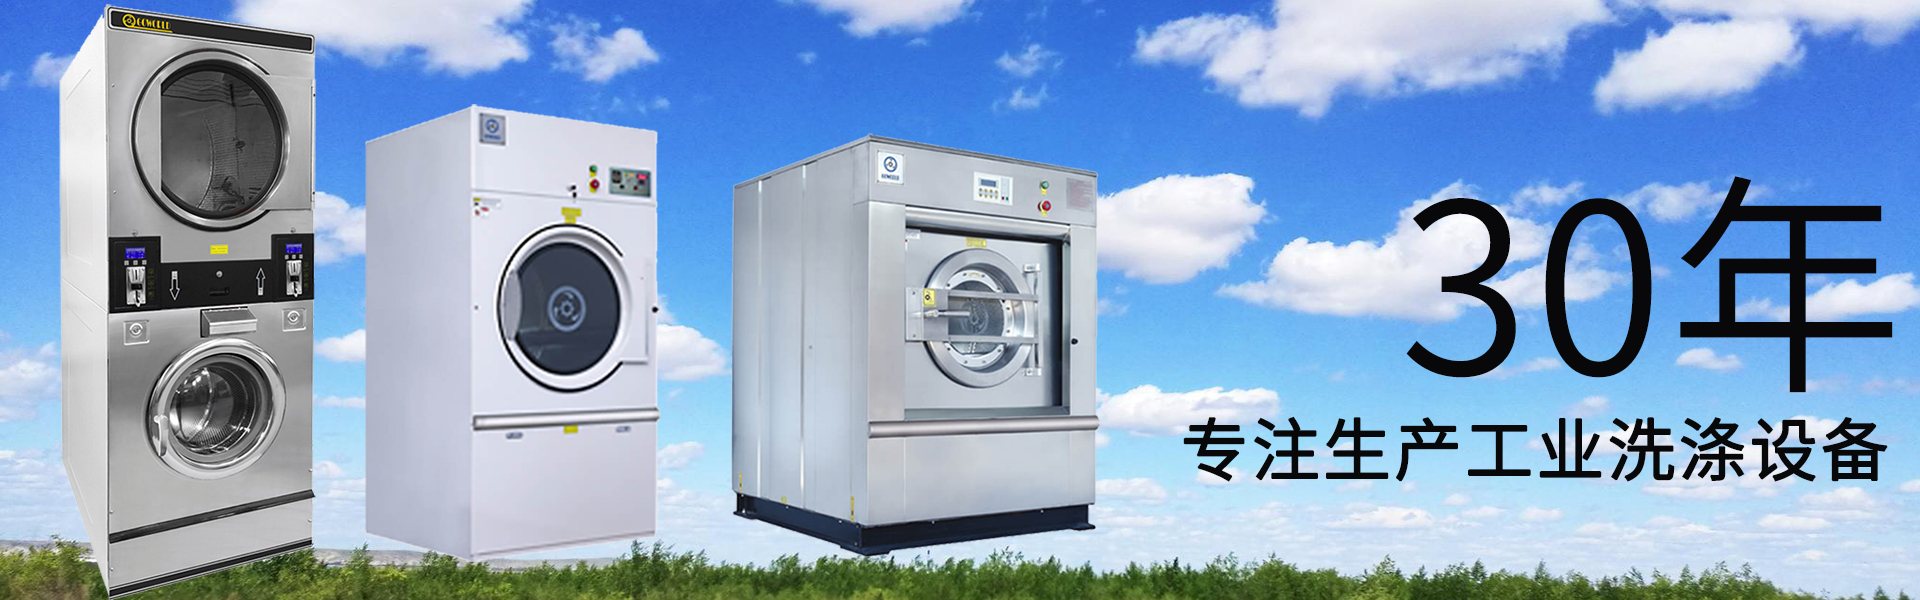 ballbet:洗衣机品牌排行榜 洗衣机品牌排行榜前十名2021